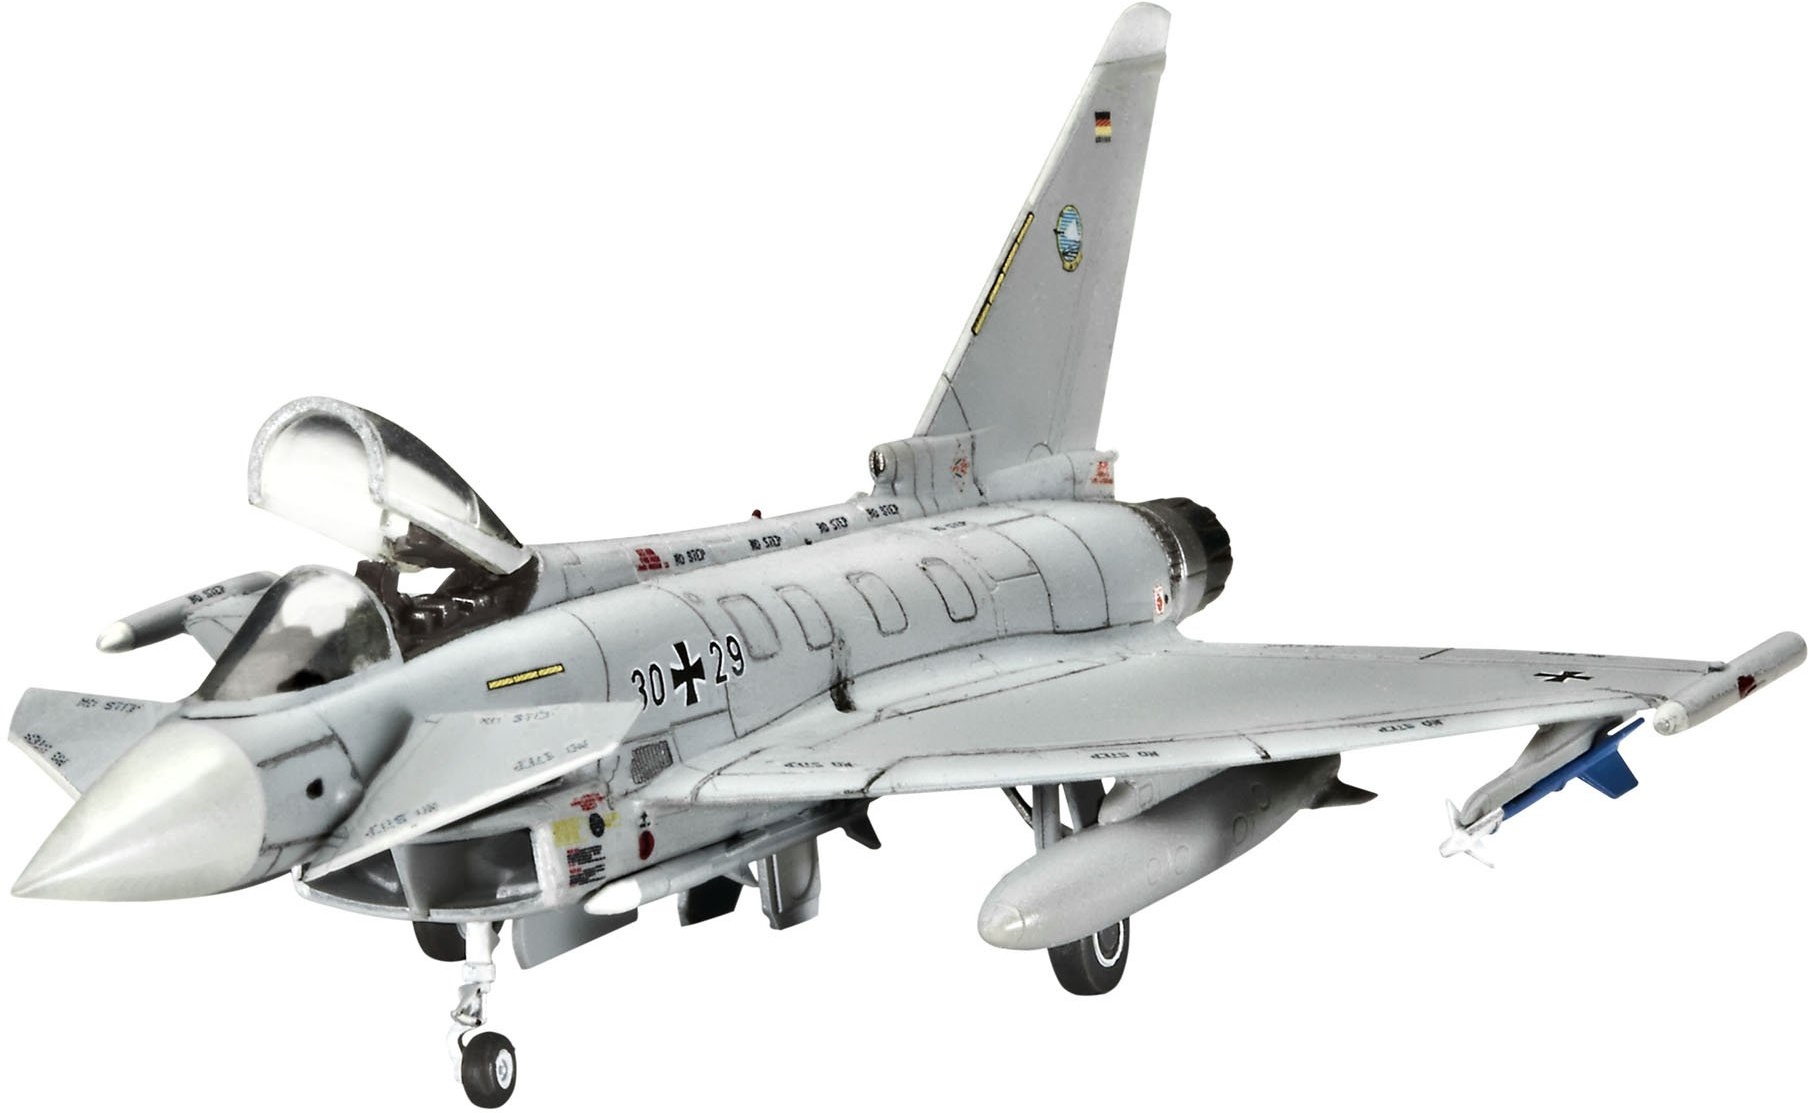 Revell Modellbausatz Flugzeug 1:144 - Eurofighter Typhoon (single seater) im Maßstab 1:144, Level 4, originalgetreue Nachbildung mit vielen Details, 04282